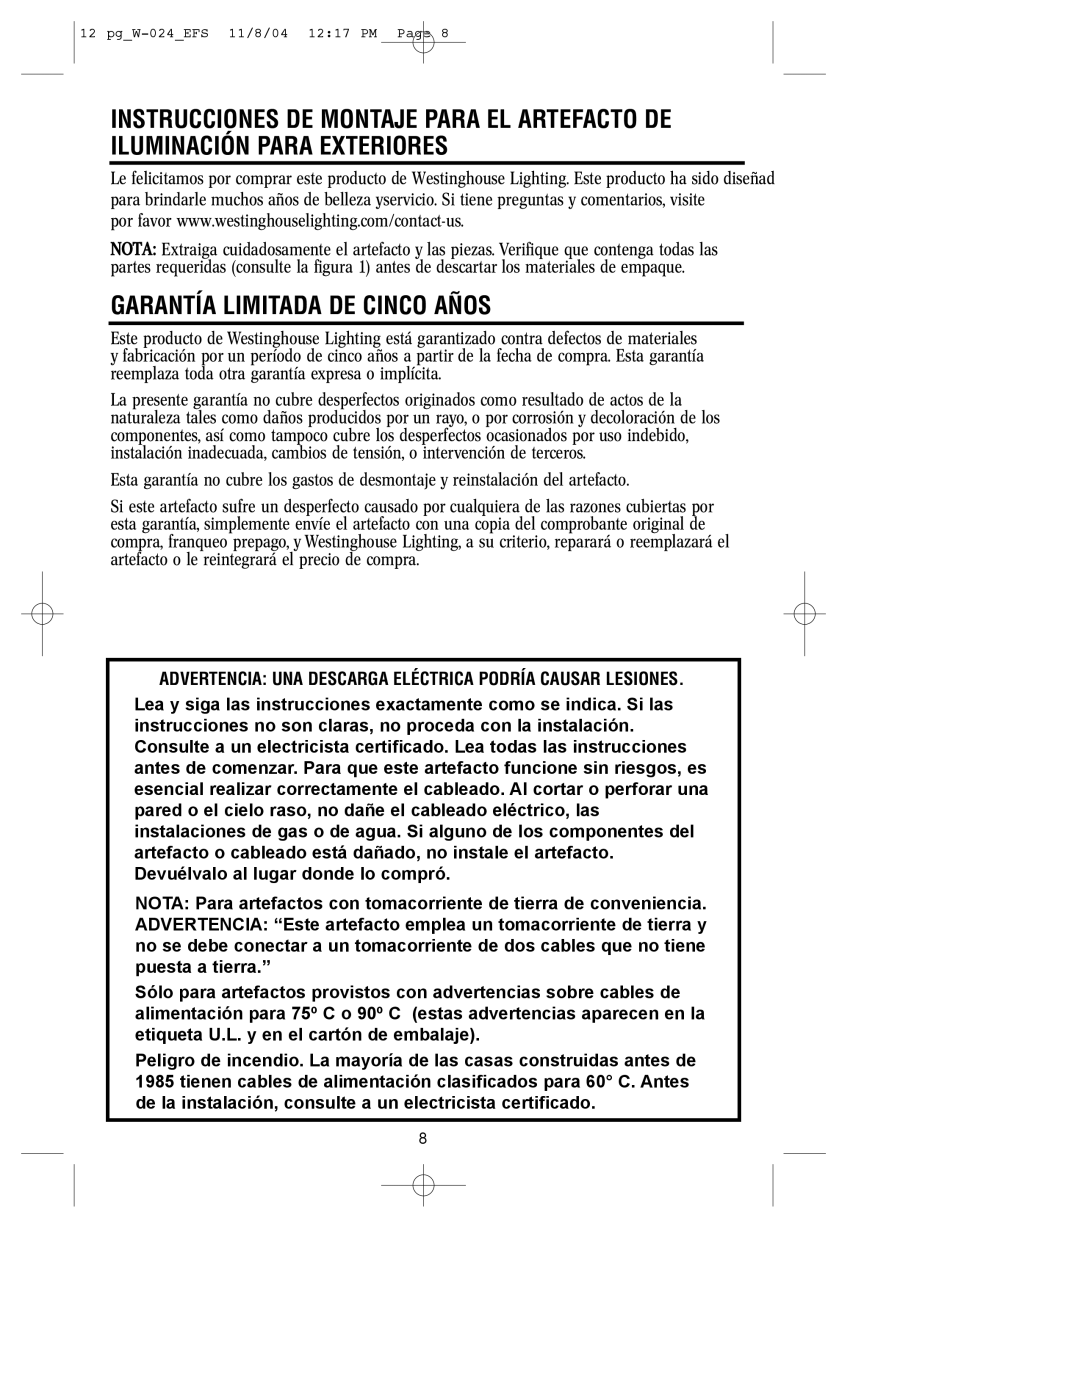 Westinghouse W-024 owner manual Garantía Limitada De Cinco Años 